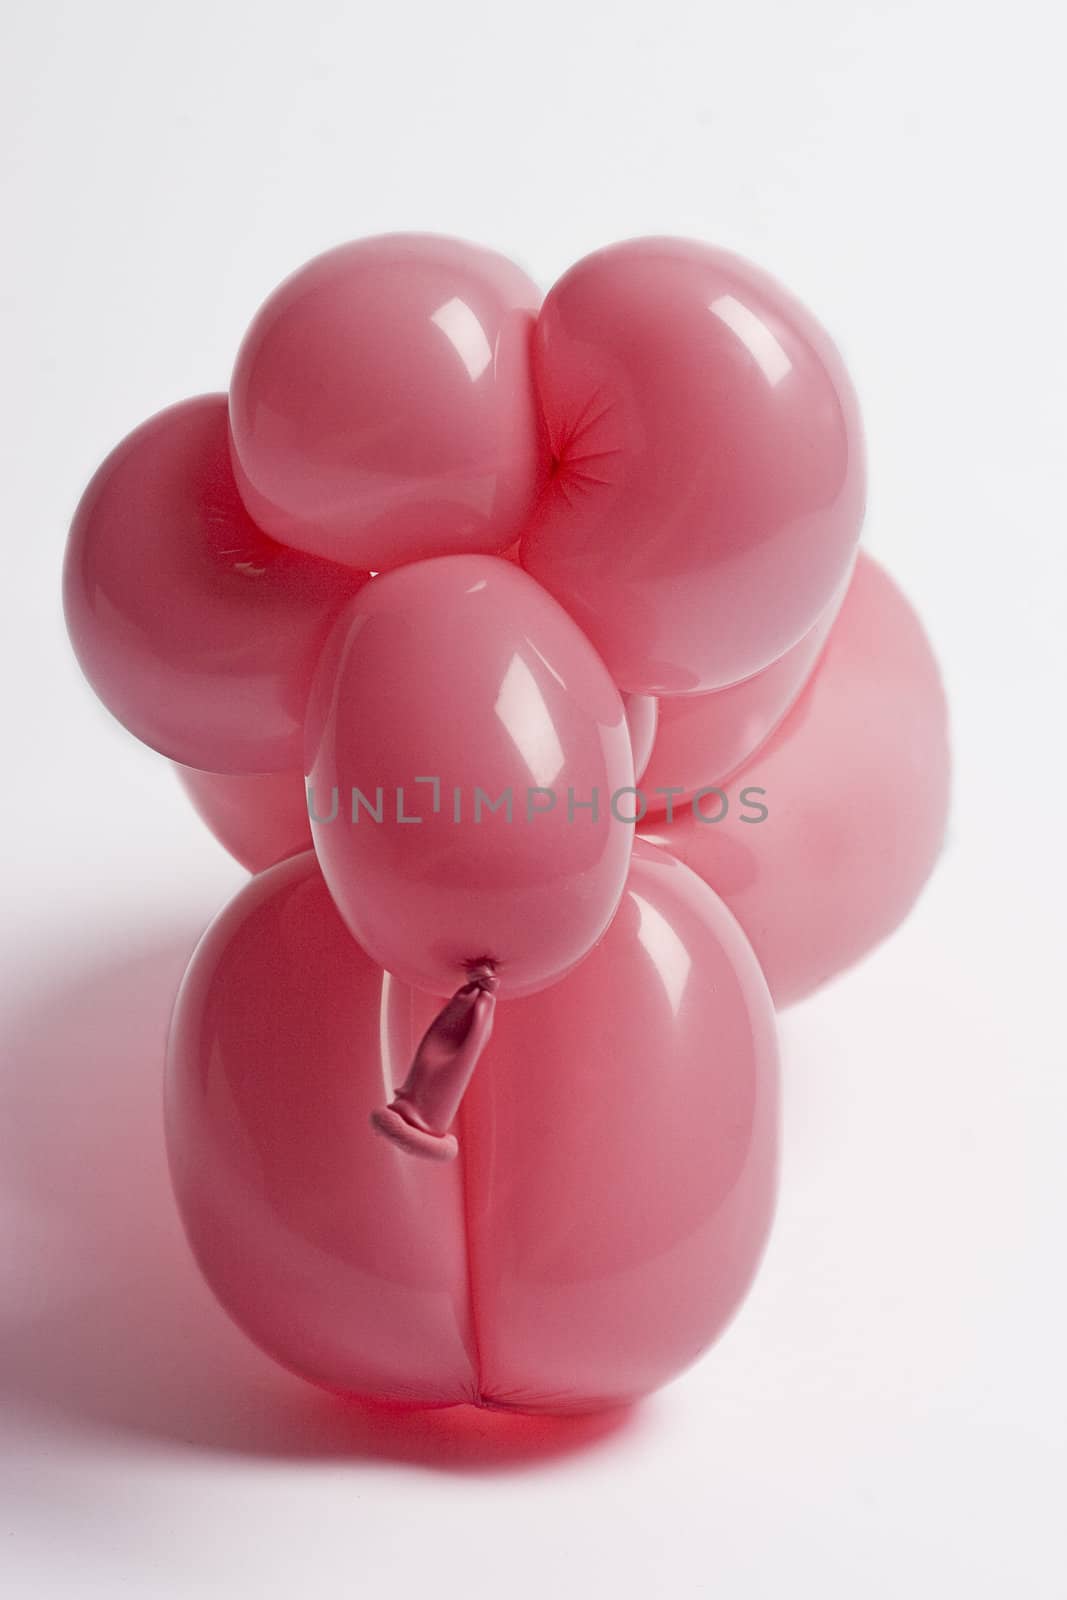 close up of a pink balloon sheep